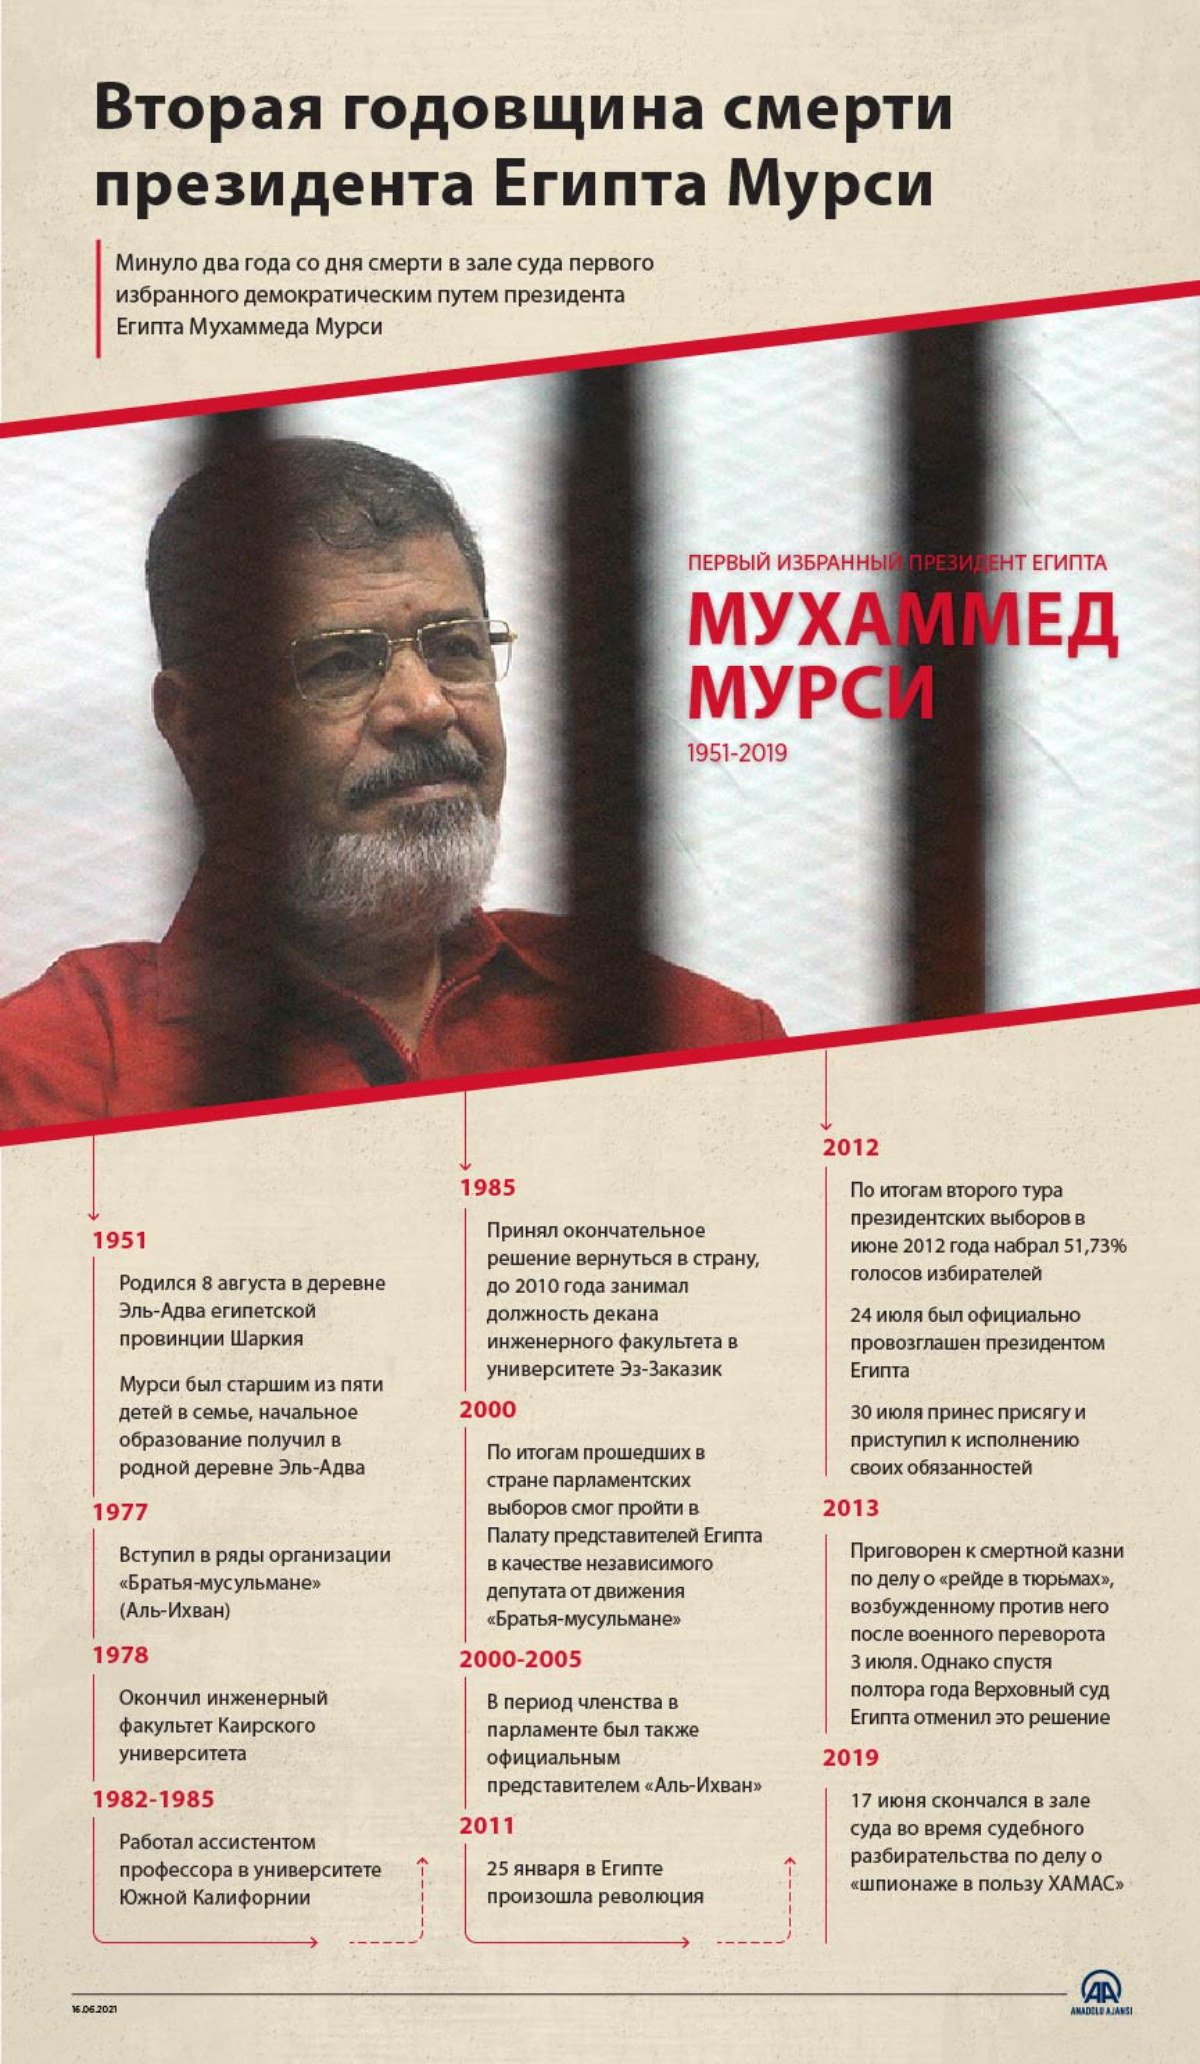 Вторая годовщина смерти президента Египта Мурси